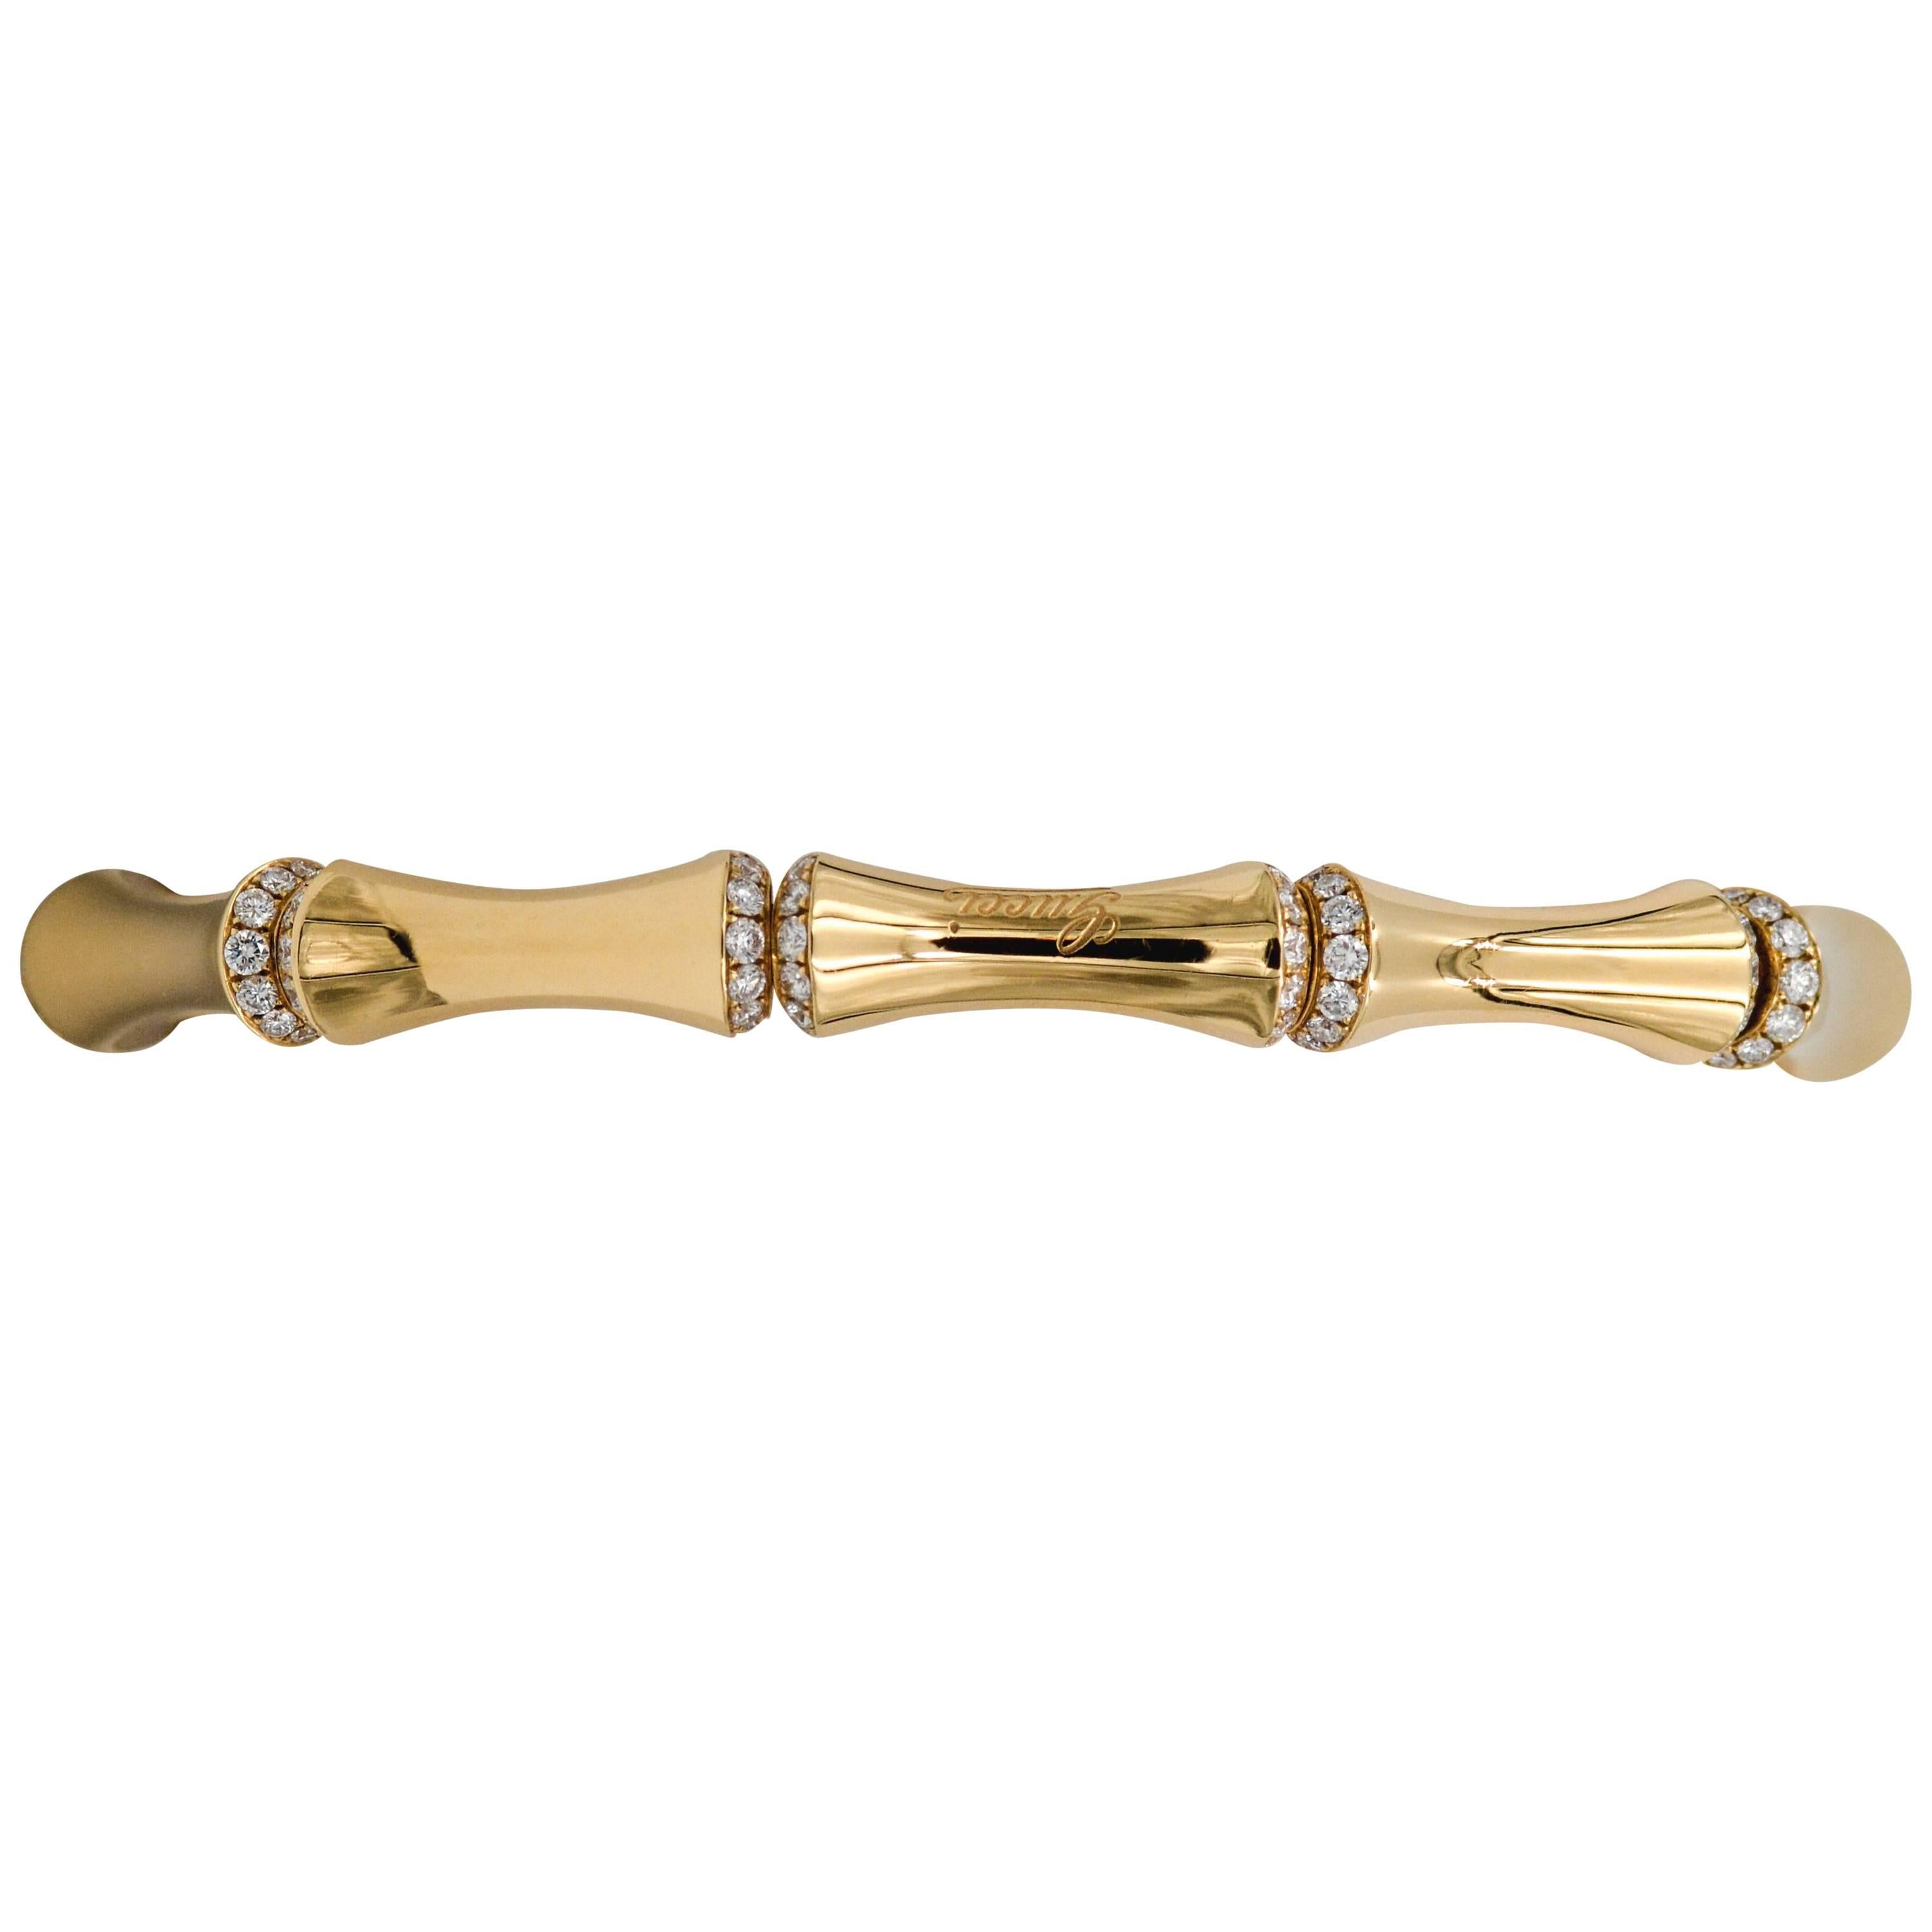 Gucci 18 Karat Gold and Diamond Bamboo Bangle Bracelet 2.31 Carat